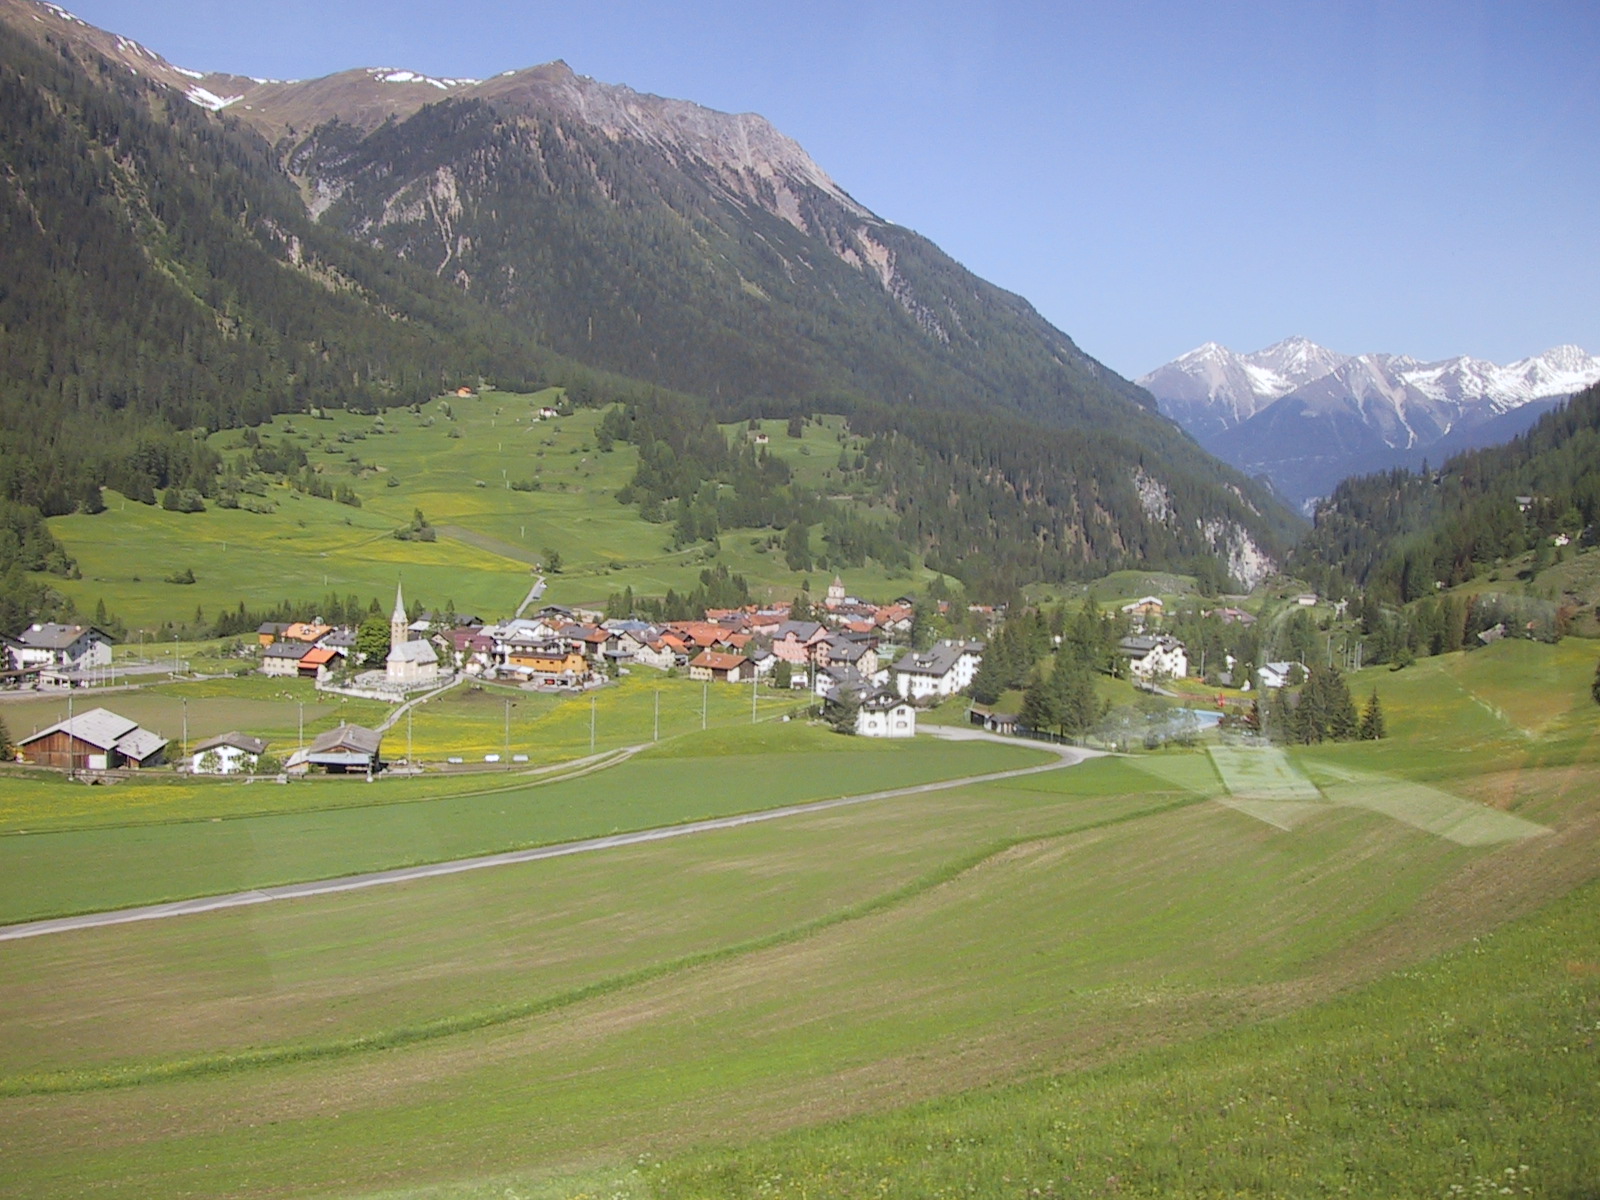 Picturesque Alpine towns dot the landscape.